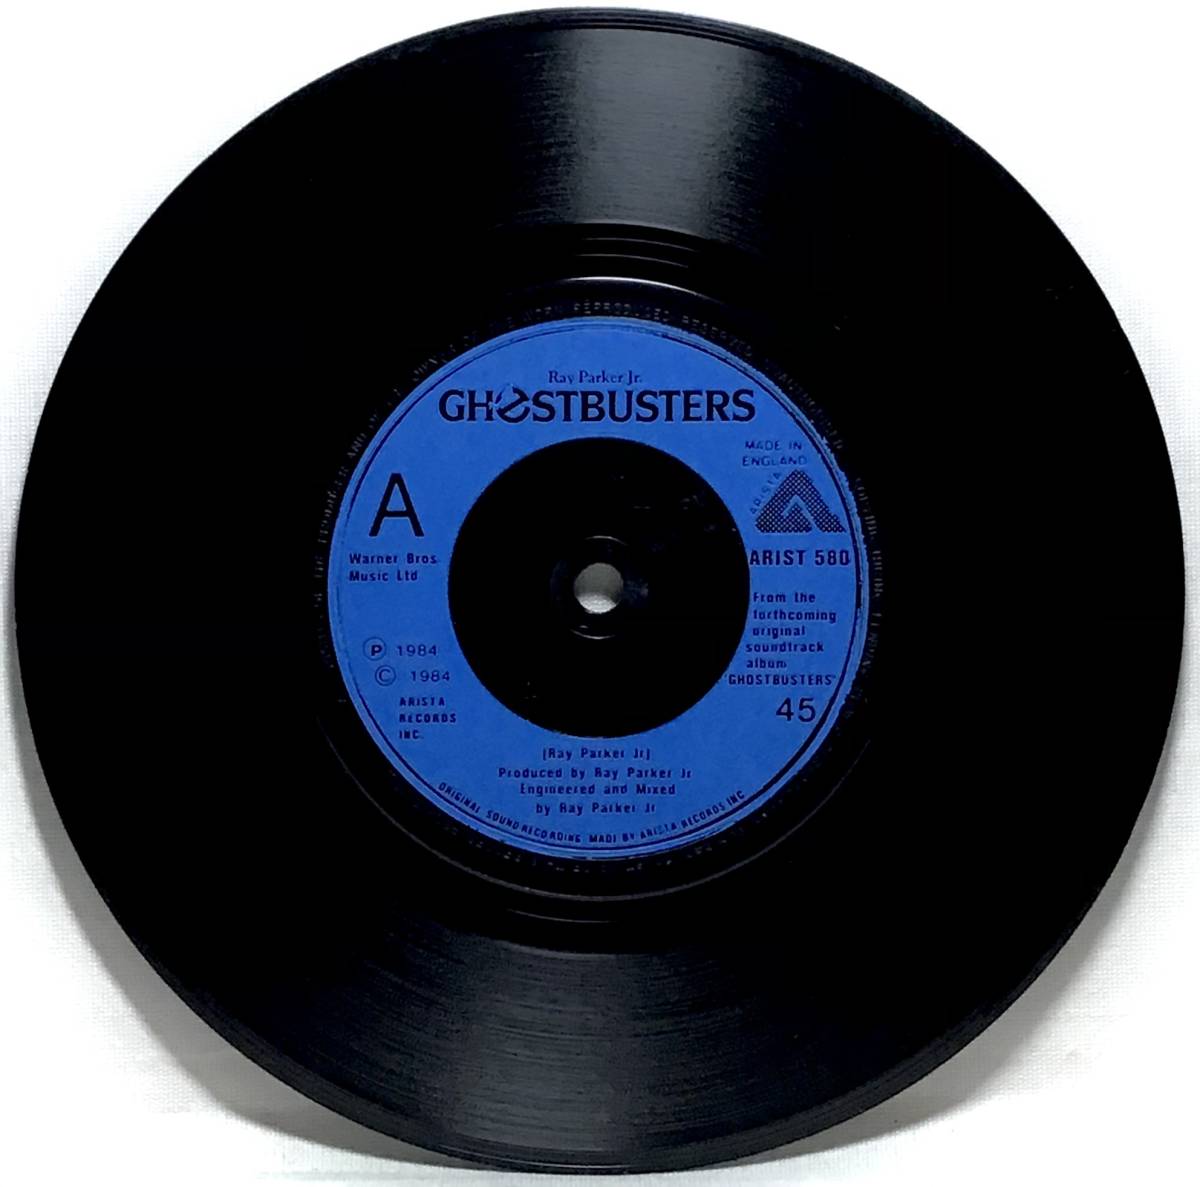 【英7】 映画ゴーストバスターズ サントラ曲 RAY PARKER JR. / GHOSTBUSTERS B面インスト 1984 UK盤 7インチレコード EP 45 試聴済_画像3